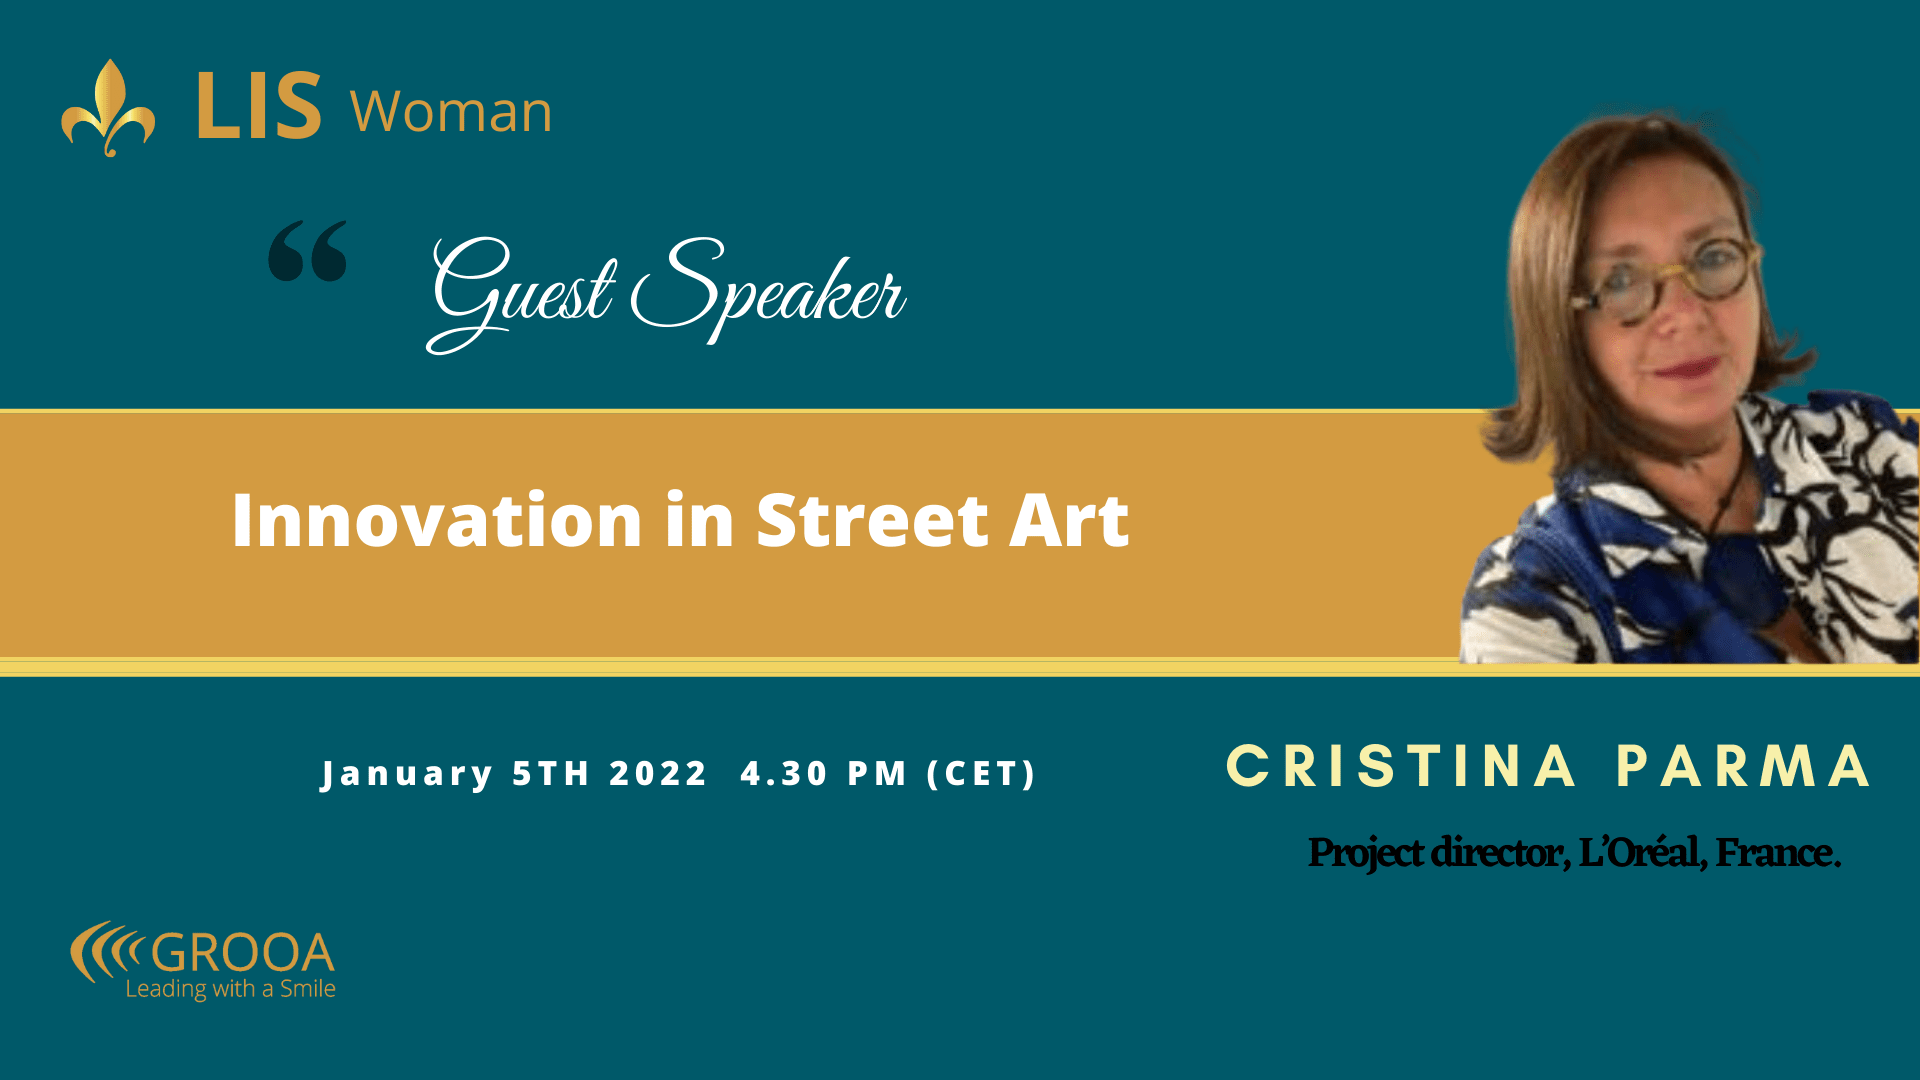 Guest Speaker - Cristina Parma - LIS WOMAN